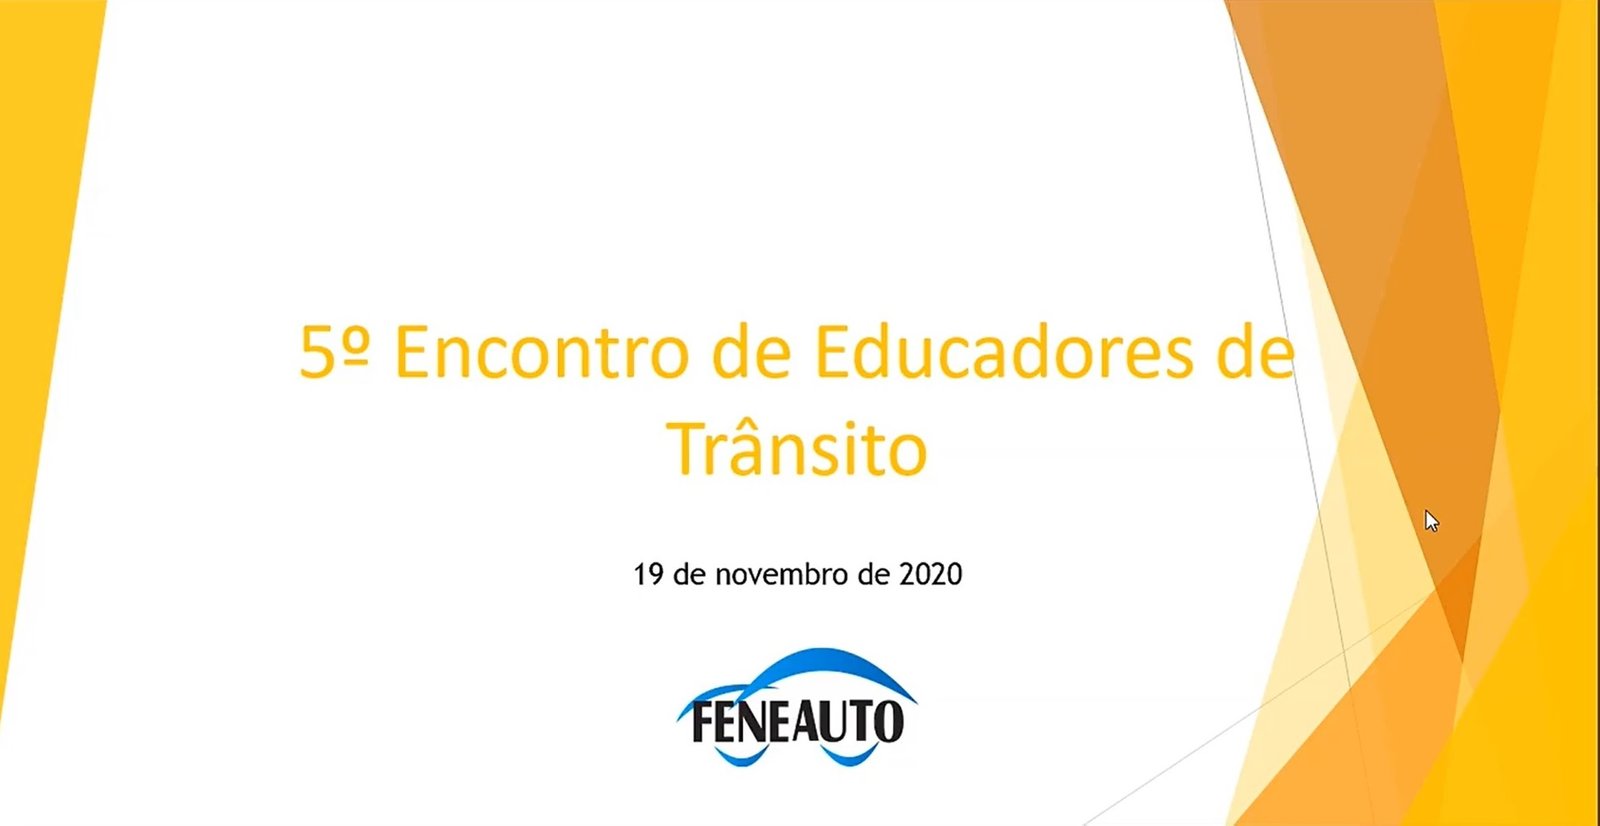 Feneauto participa do 5º Encontro de Educadores de Trânsito do Denatran